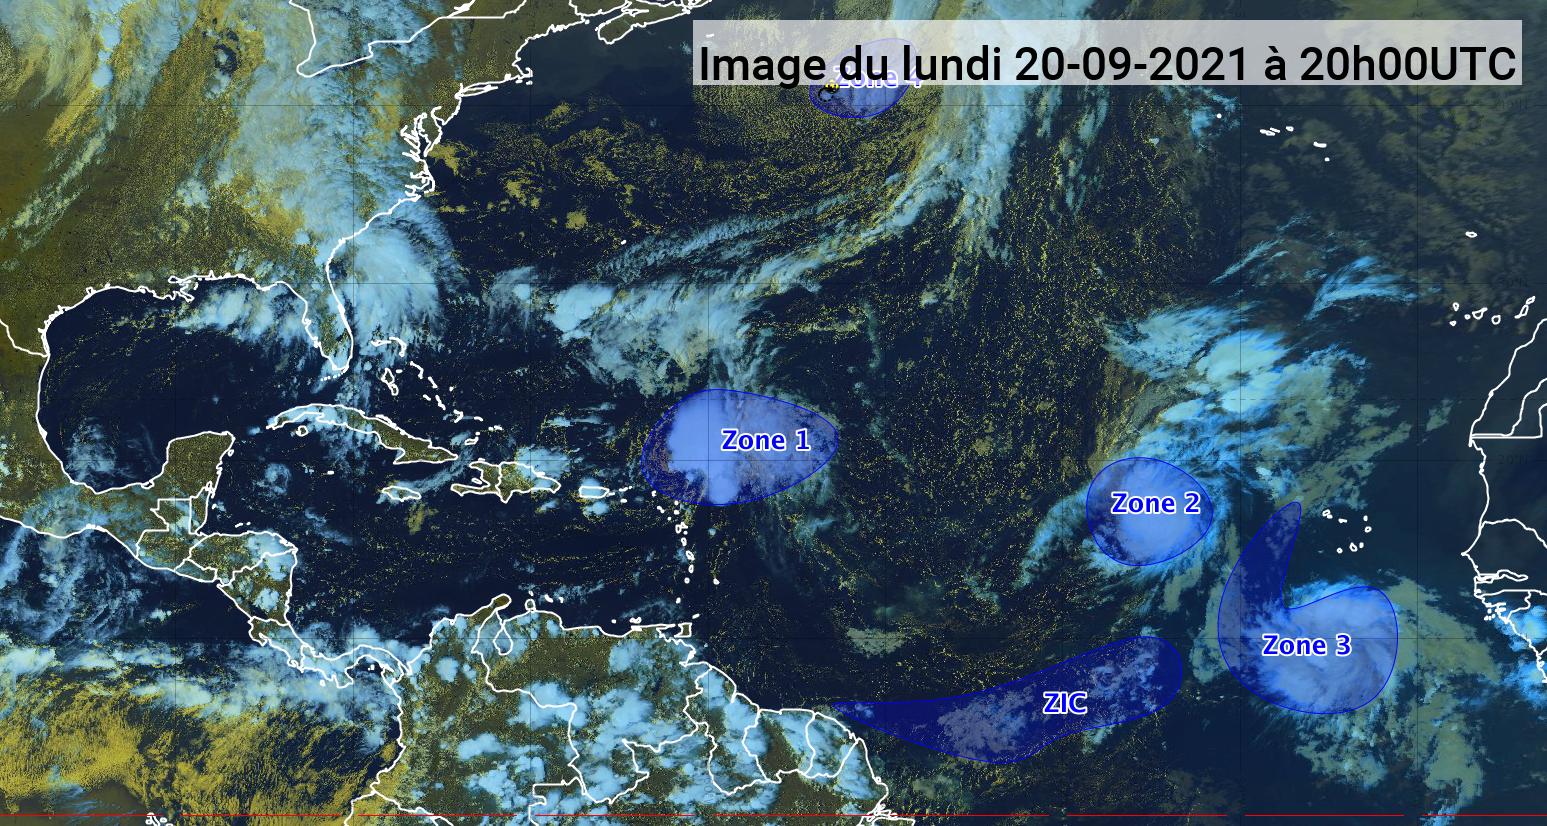     Peter et Rose, deux tempêtes tropicales identifiées mais sans risques (bulletin du 20/09/21)

